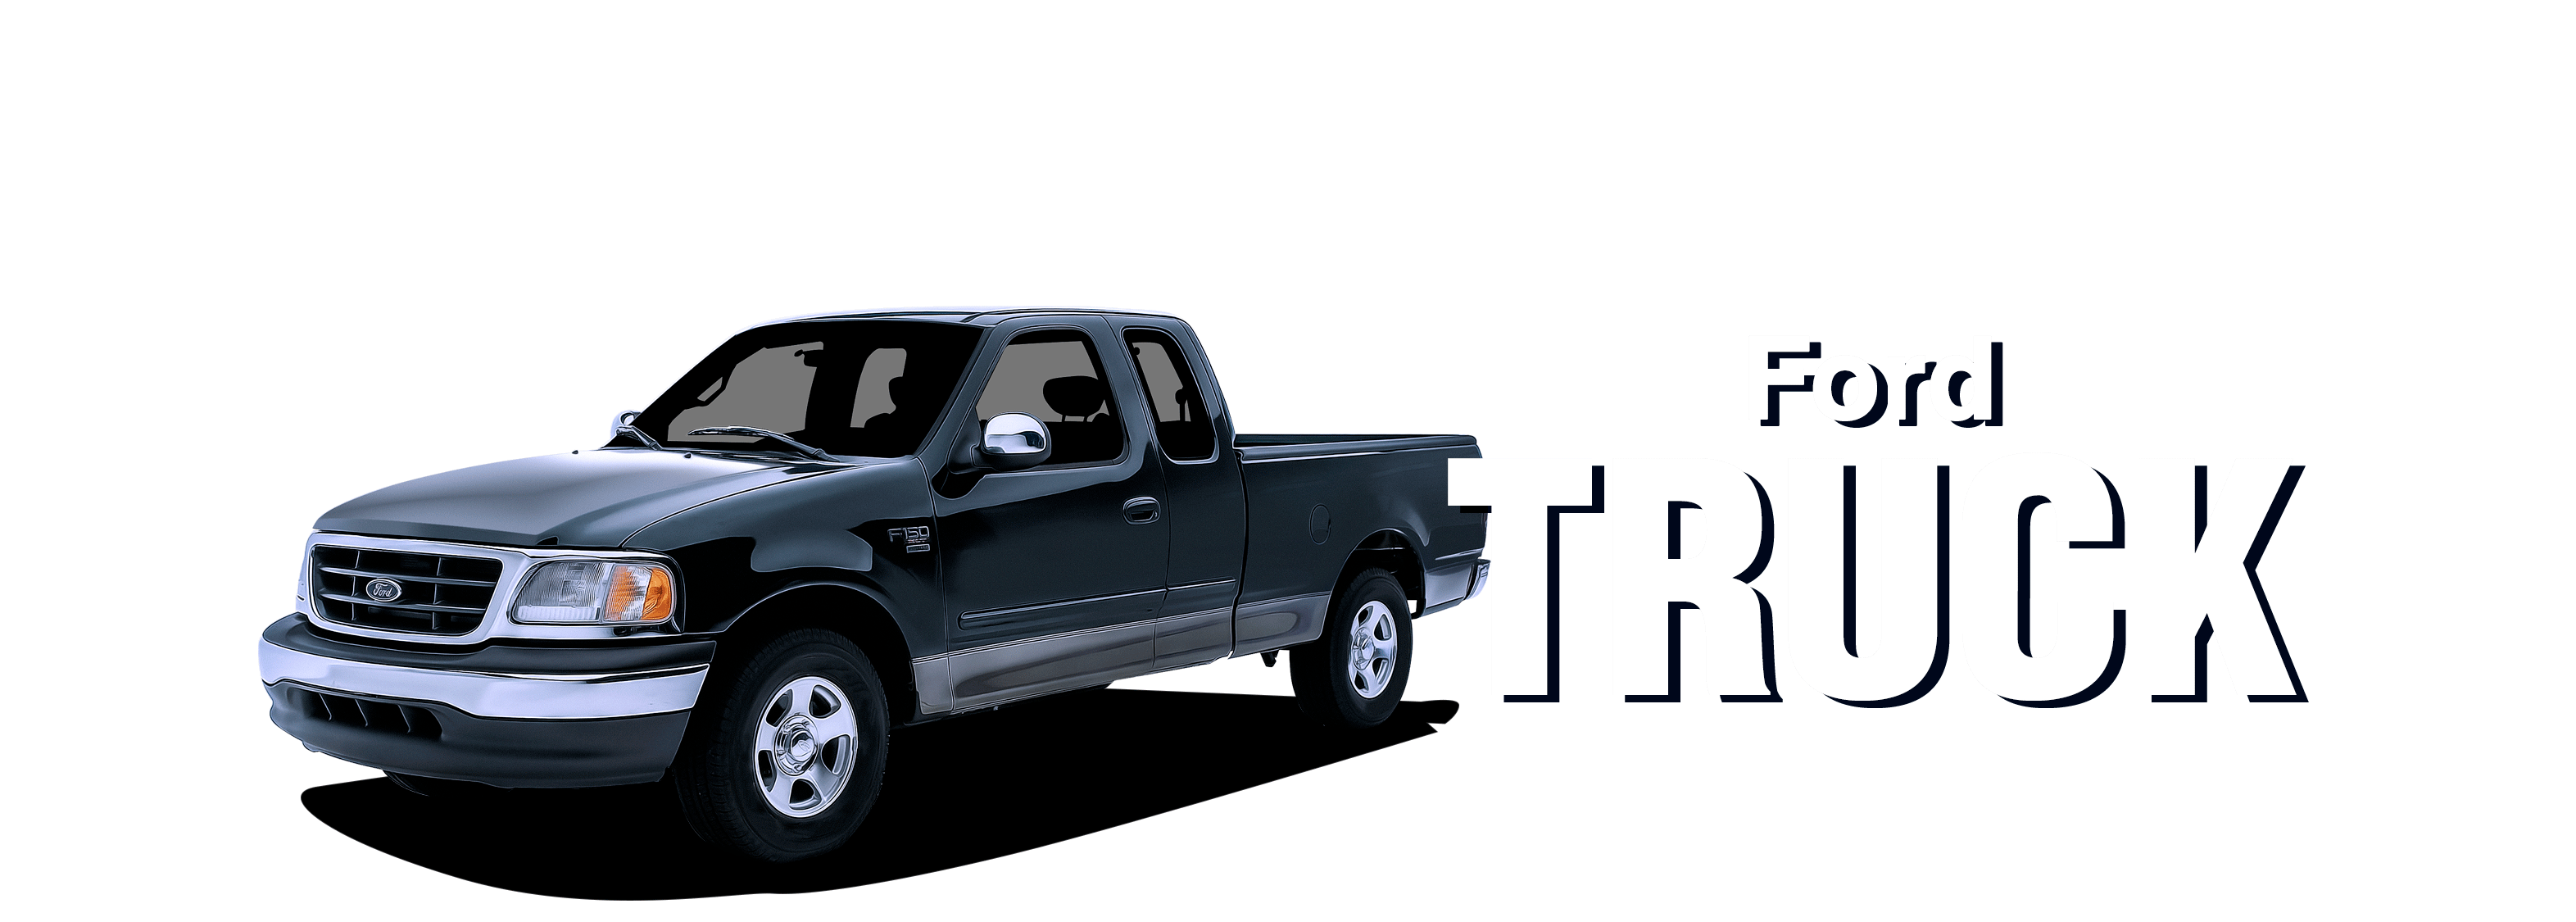 97-04FordTruck-vehicle-desktop-V2